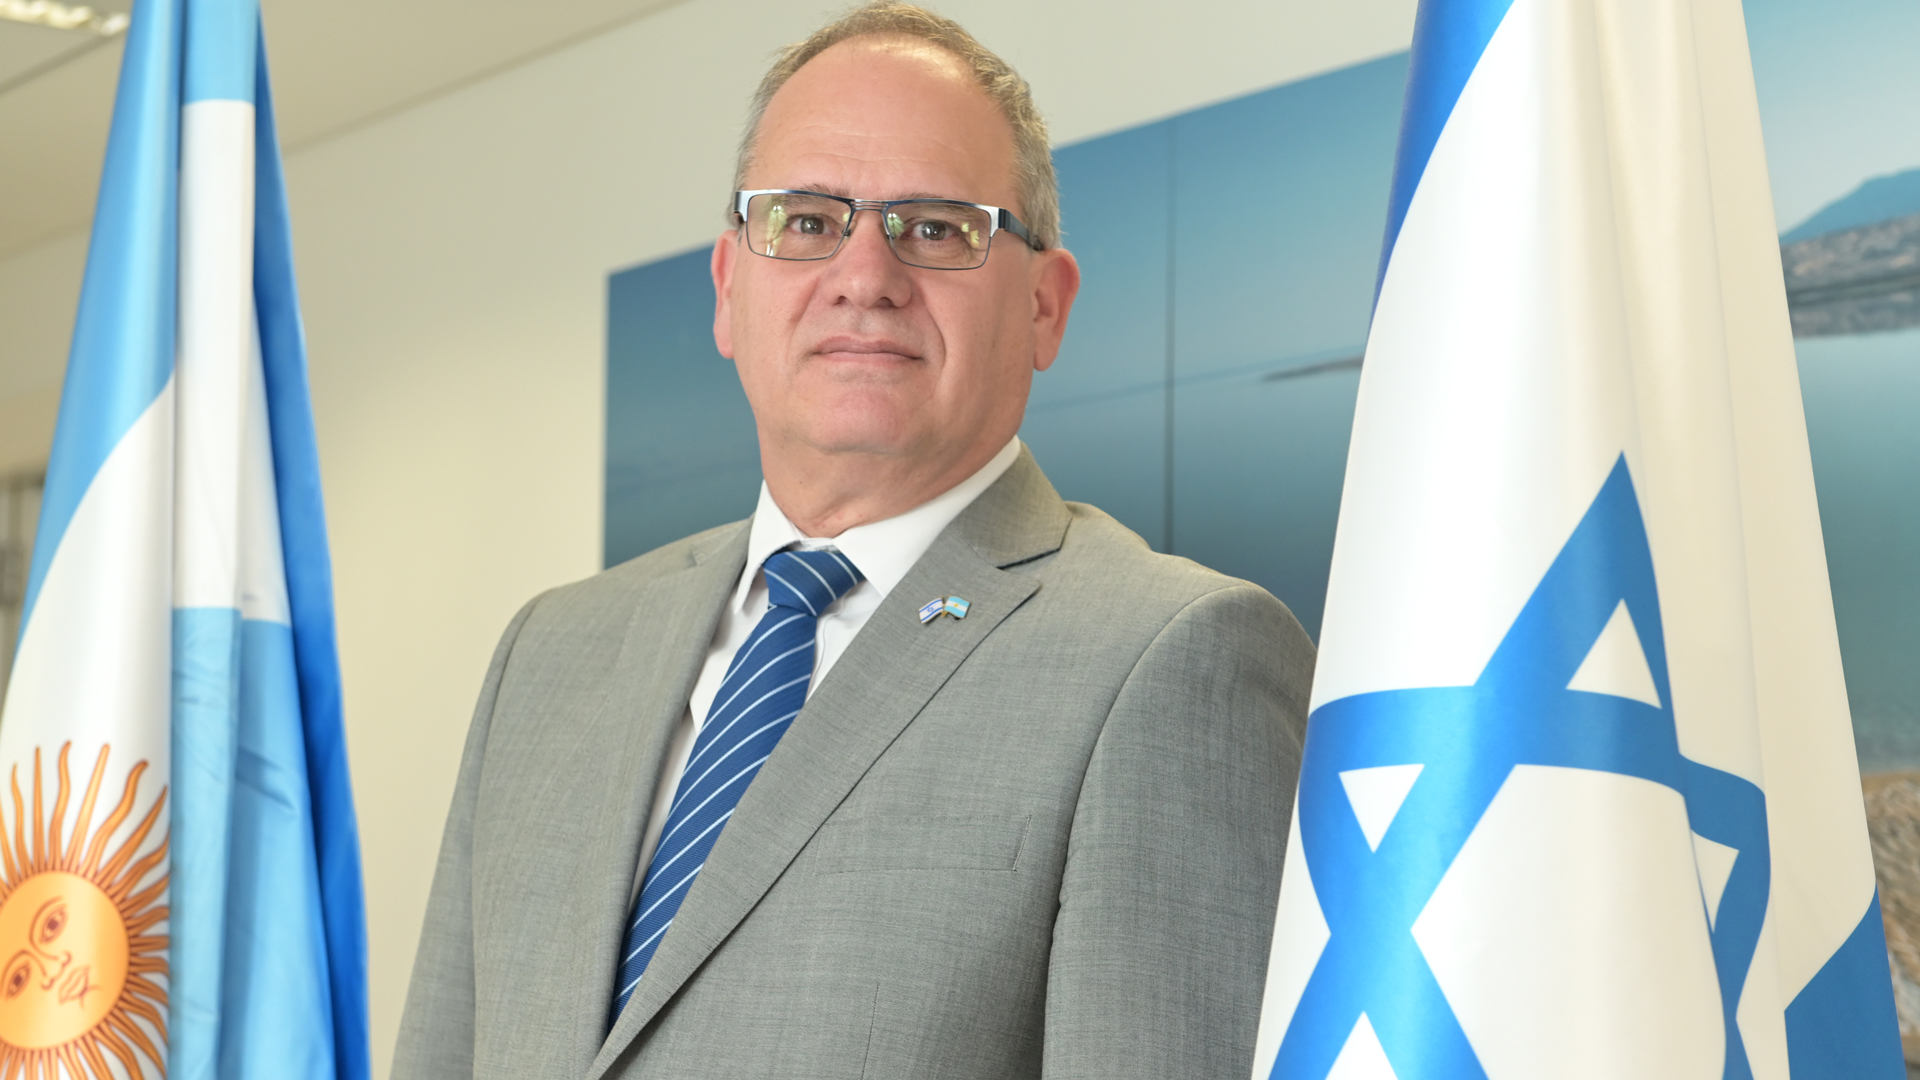 Embajador Eyal Sela: “Israel es un Estado joven, con una cultura milenaria y vocación emprendedora”